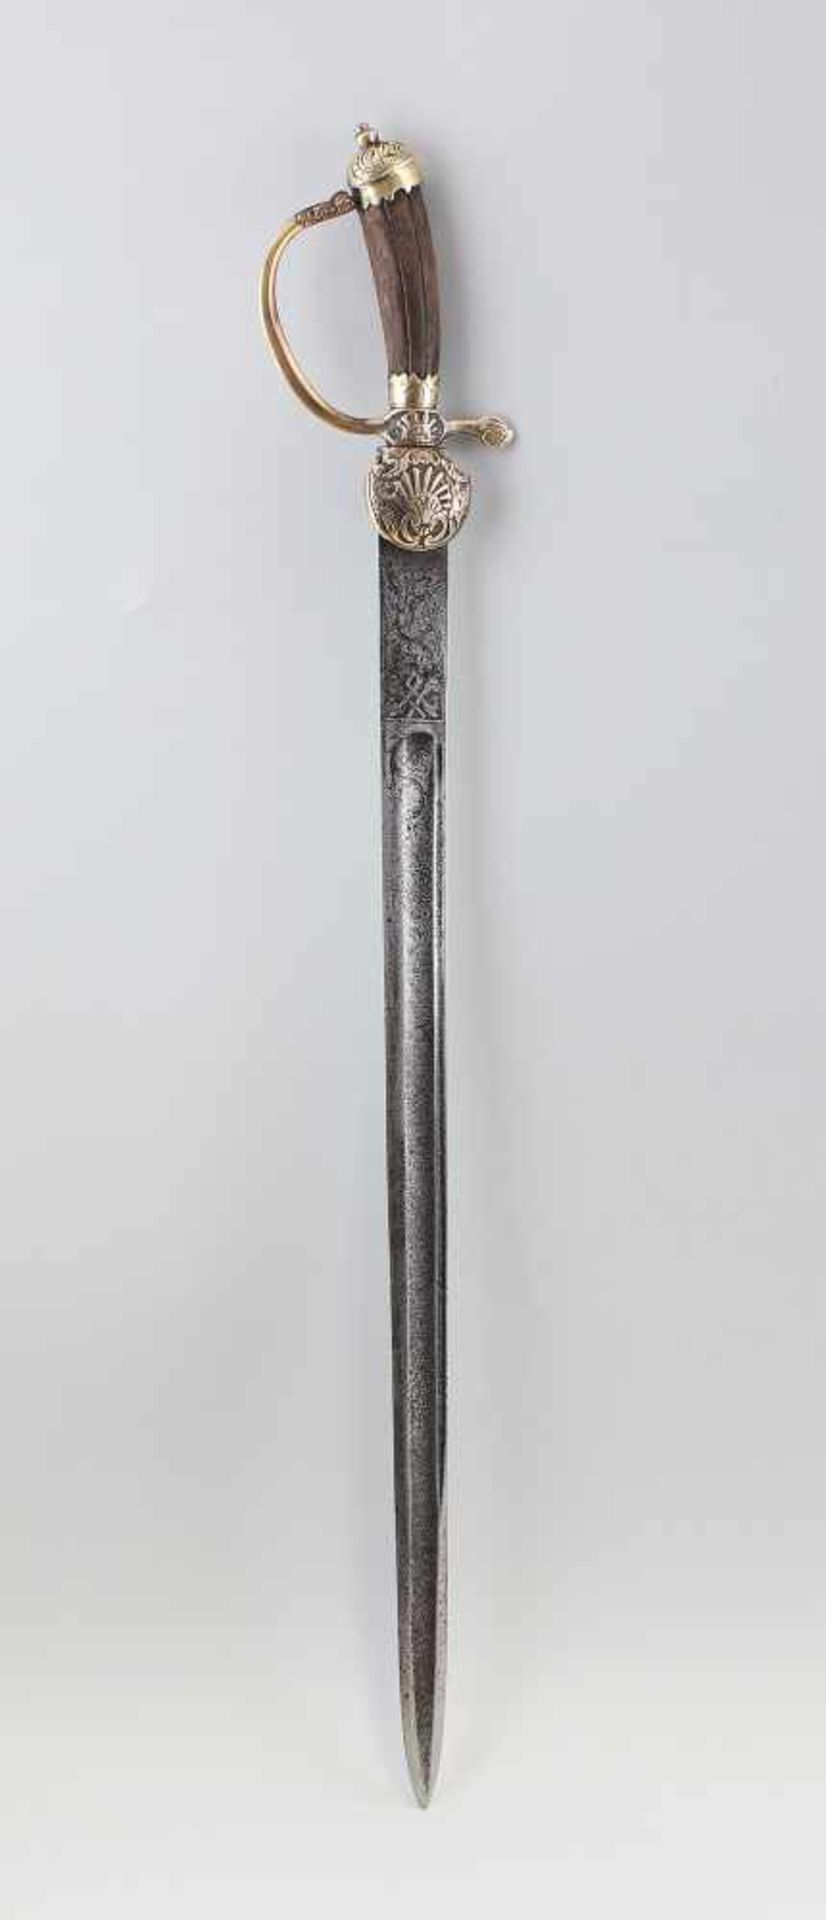 Hirschfänger um 1750gerade, breite Klinge mit Zierätzungen (stark berieben, leicht rostnarbig), - Bild 2 aus 2